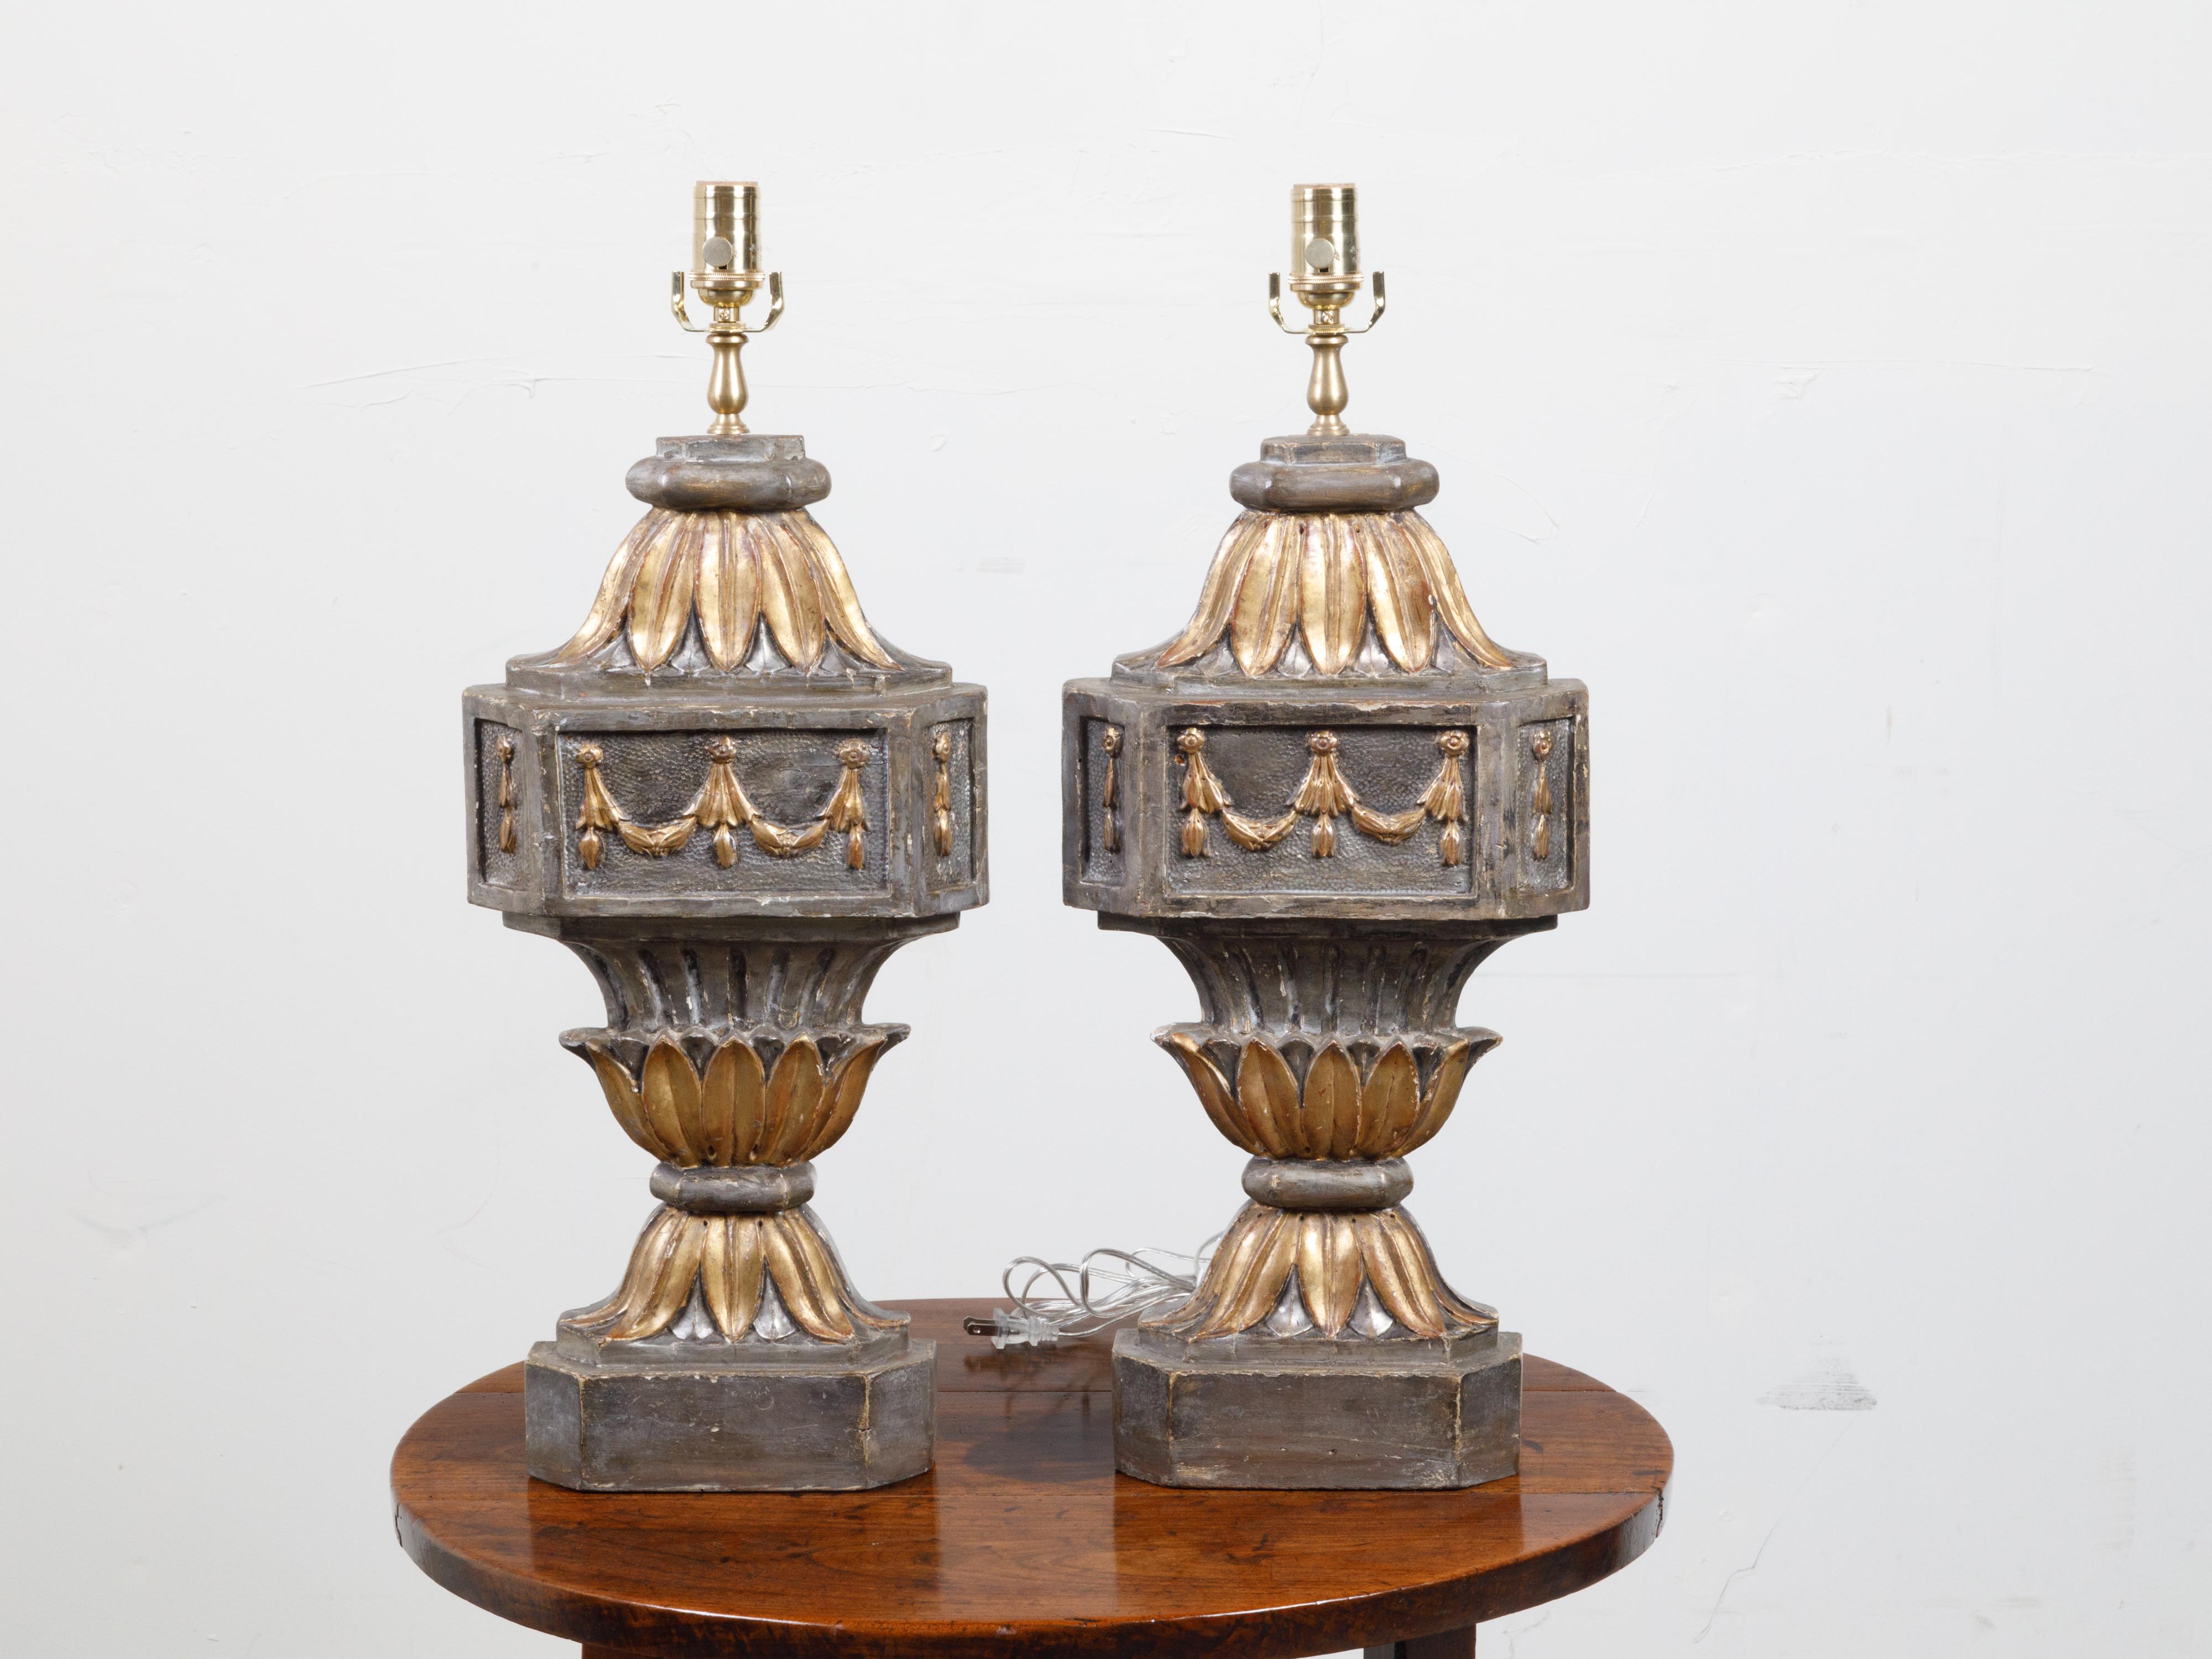 Une paire de fragments de bois français sculptés et dorés du 18e siècle, transformés en lampes de table. Créée en France au XVIIIe siècle, cette paire de fragments architecturaux a été montée dans une lampe de table câblée pour les États-Unis.